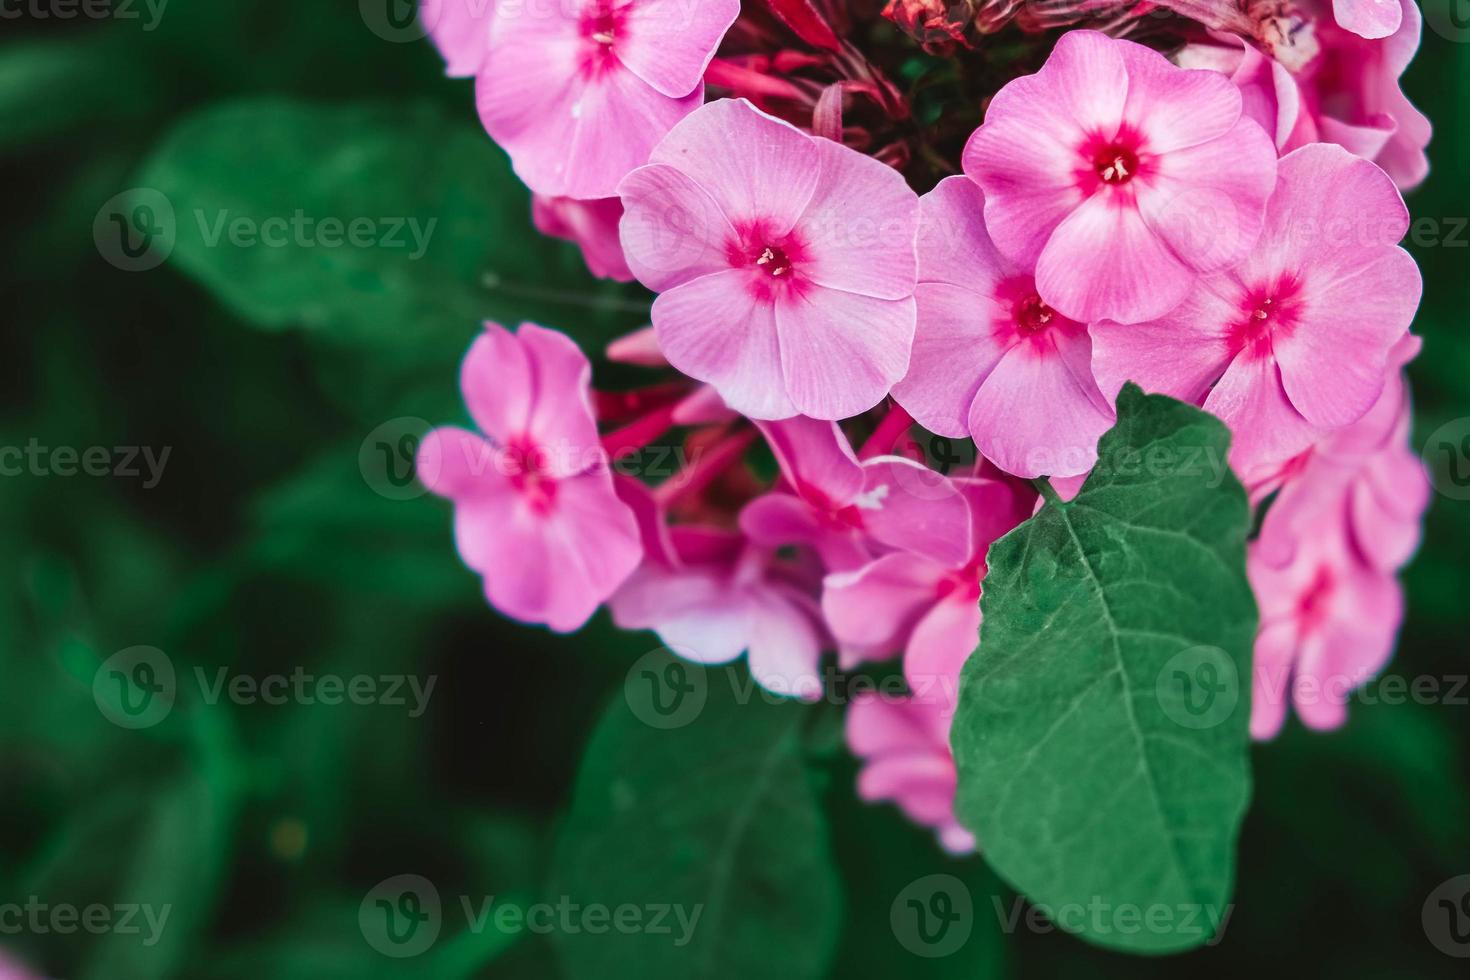 rosa flox blommor på en bakgrund av gröna blad. trädgårdsblommor i mjuka rosa nyanser. kopiera, tomt utrymme för text foto